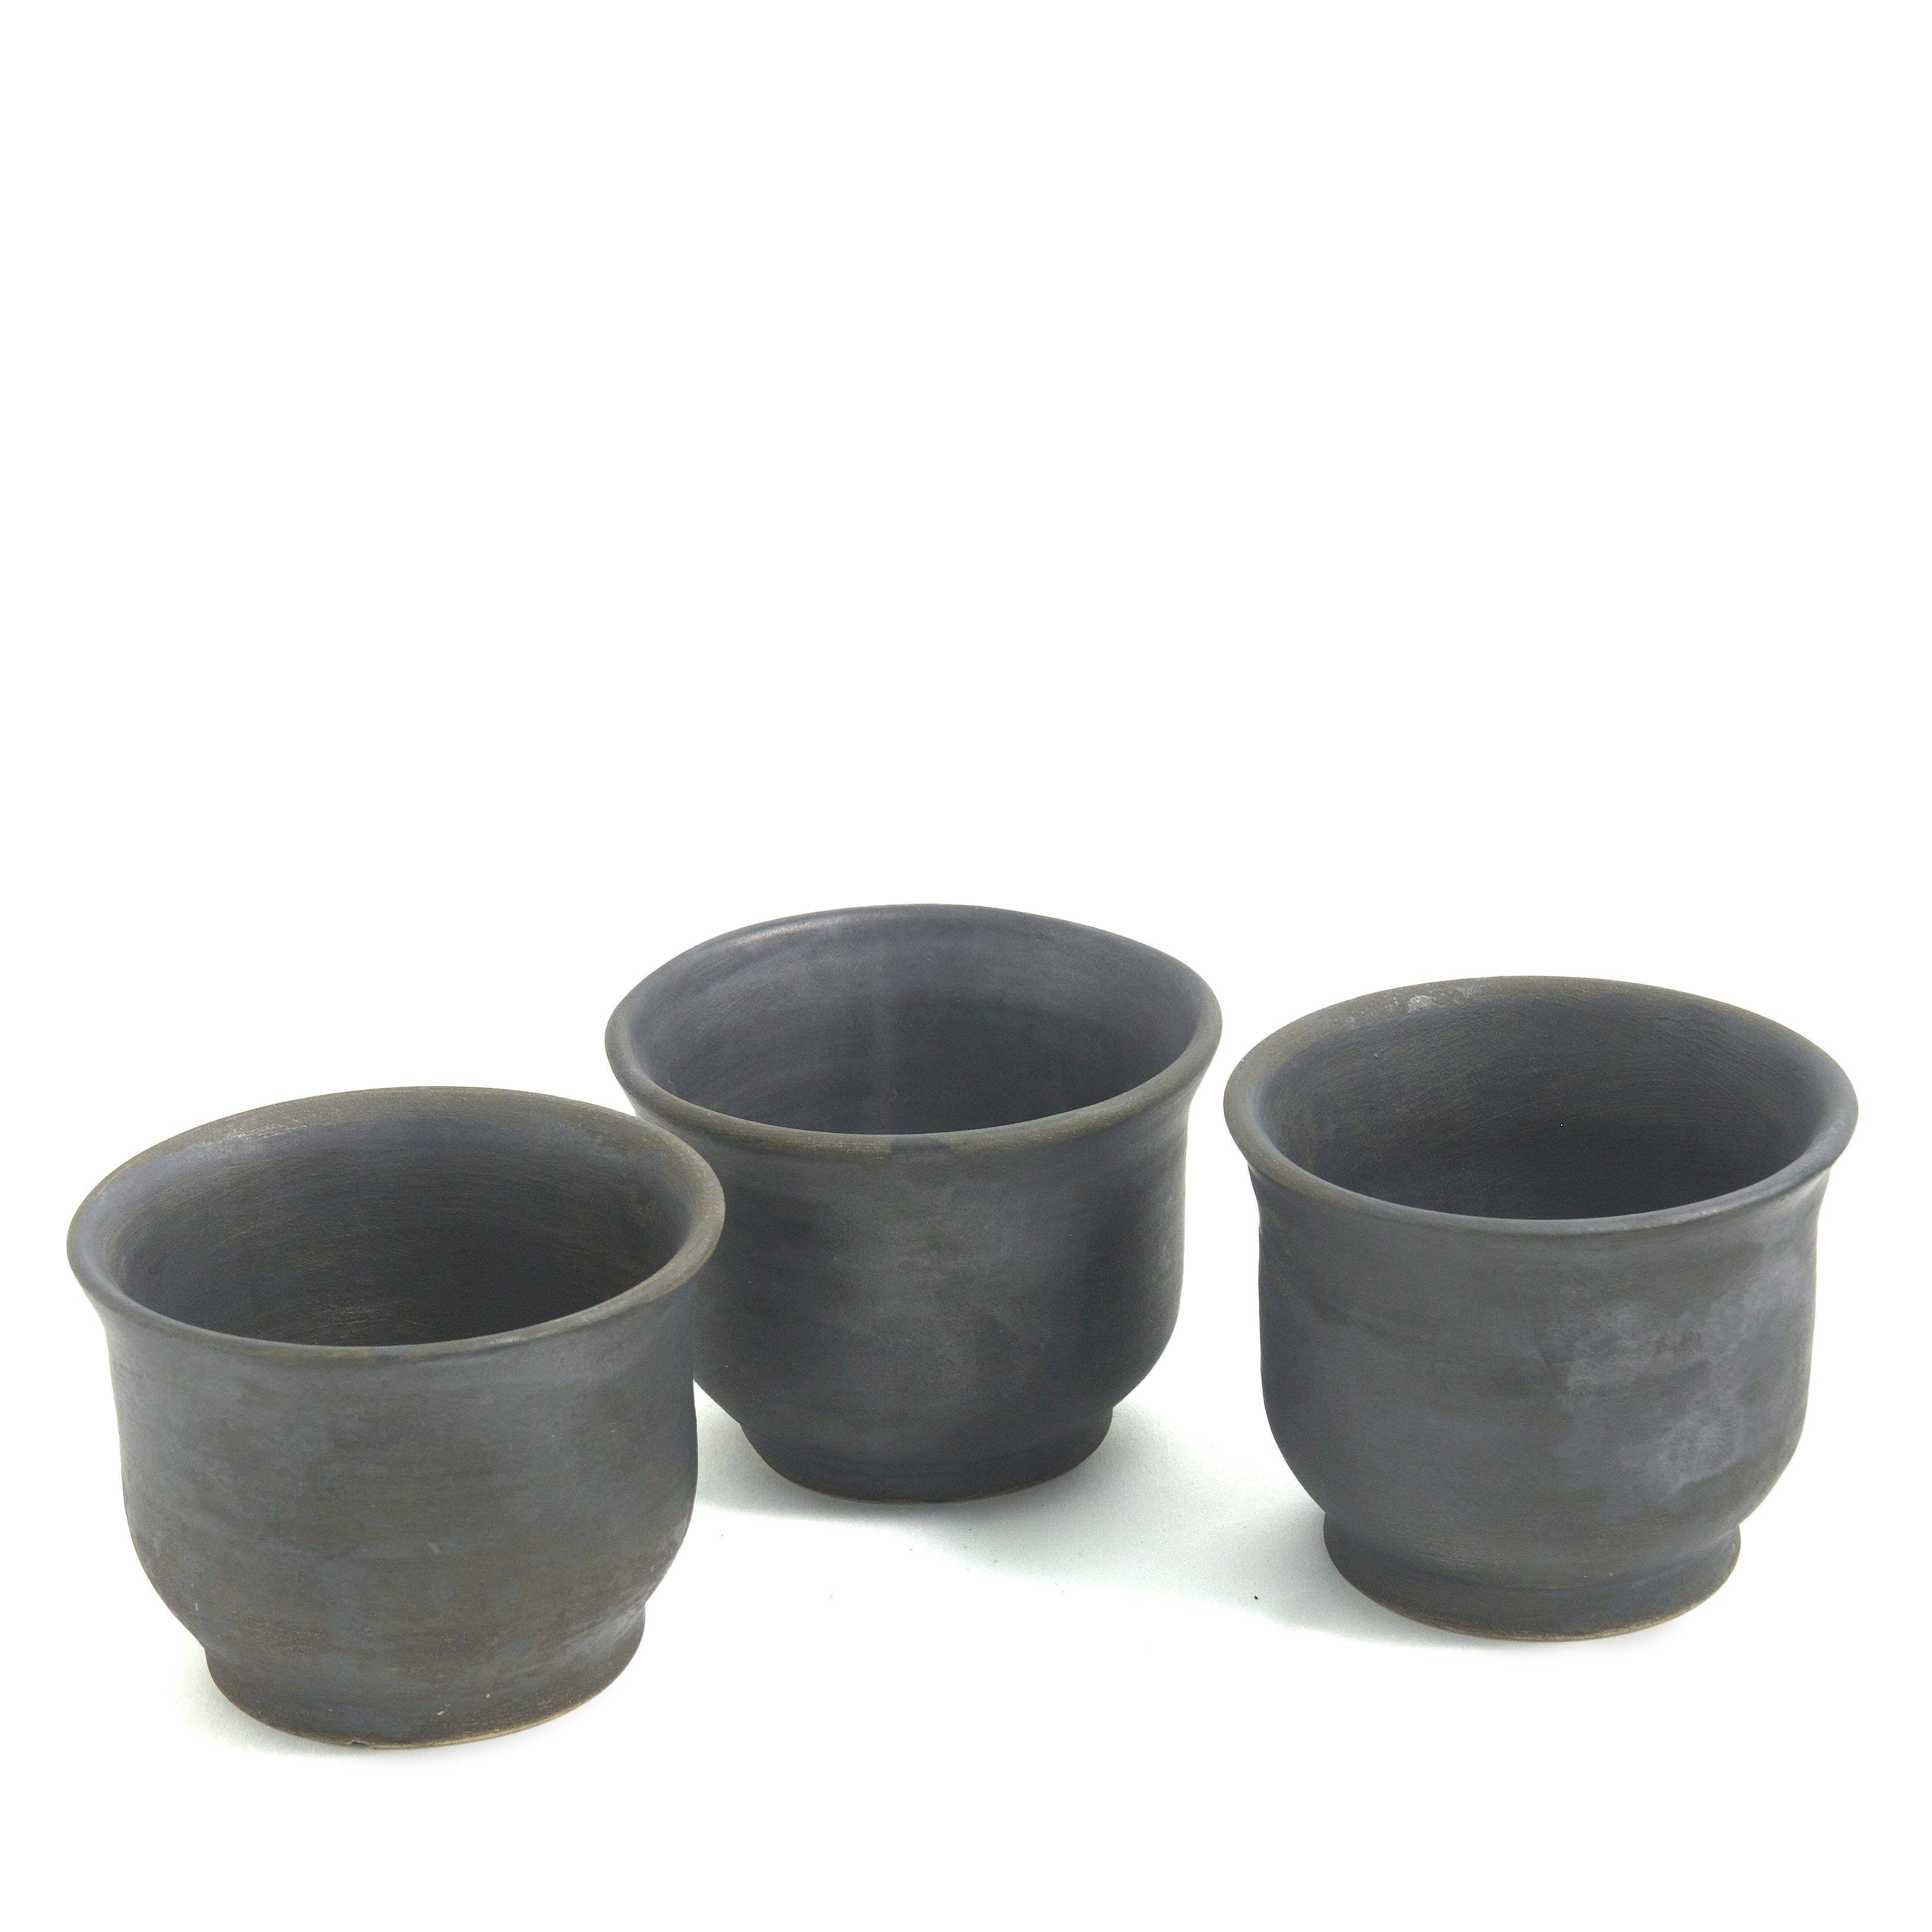 Erde 3 Tassen

Dieses Set aus drei Bechern aus mattschwarzer Keramik, die in geschickter Handarbeit auf der Drechselbank hergestellt werden, ist eine exklusive Ergänzung für moderne Geschirrkollektionen und verleiht ihnen einen Hauch von